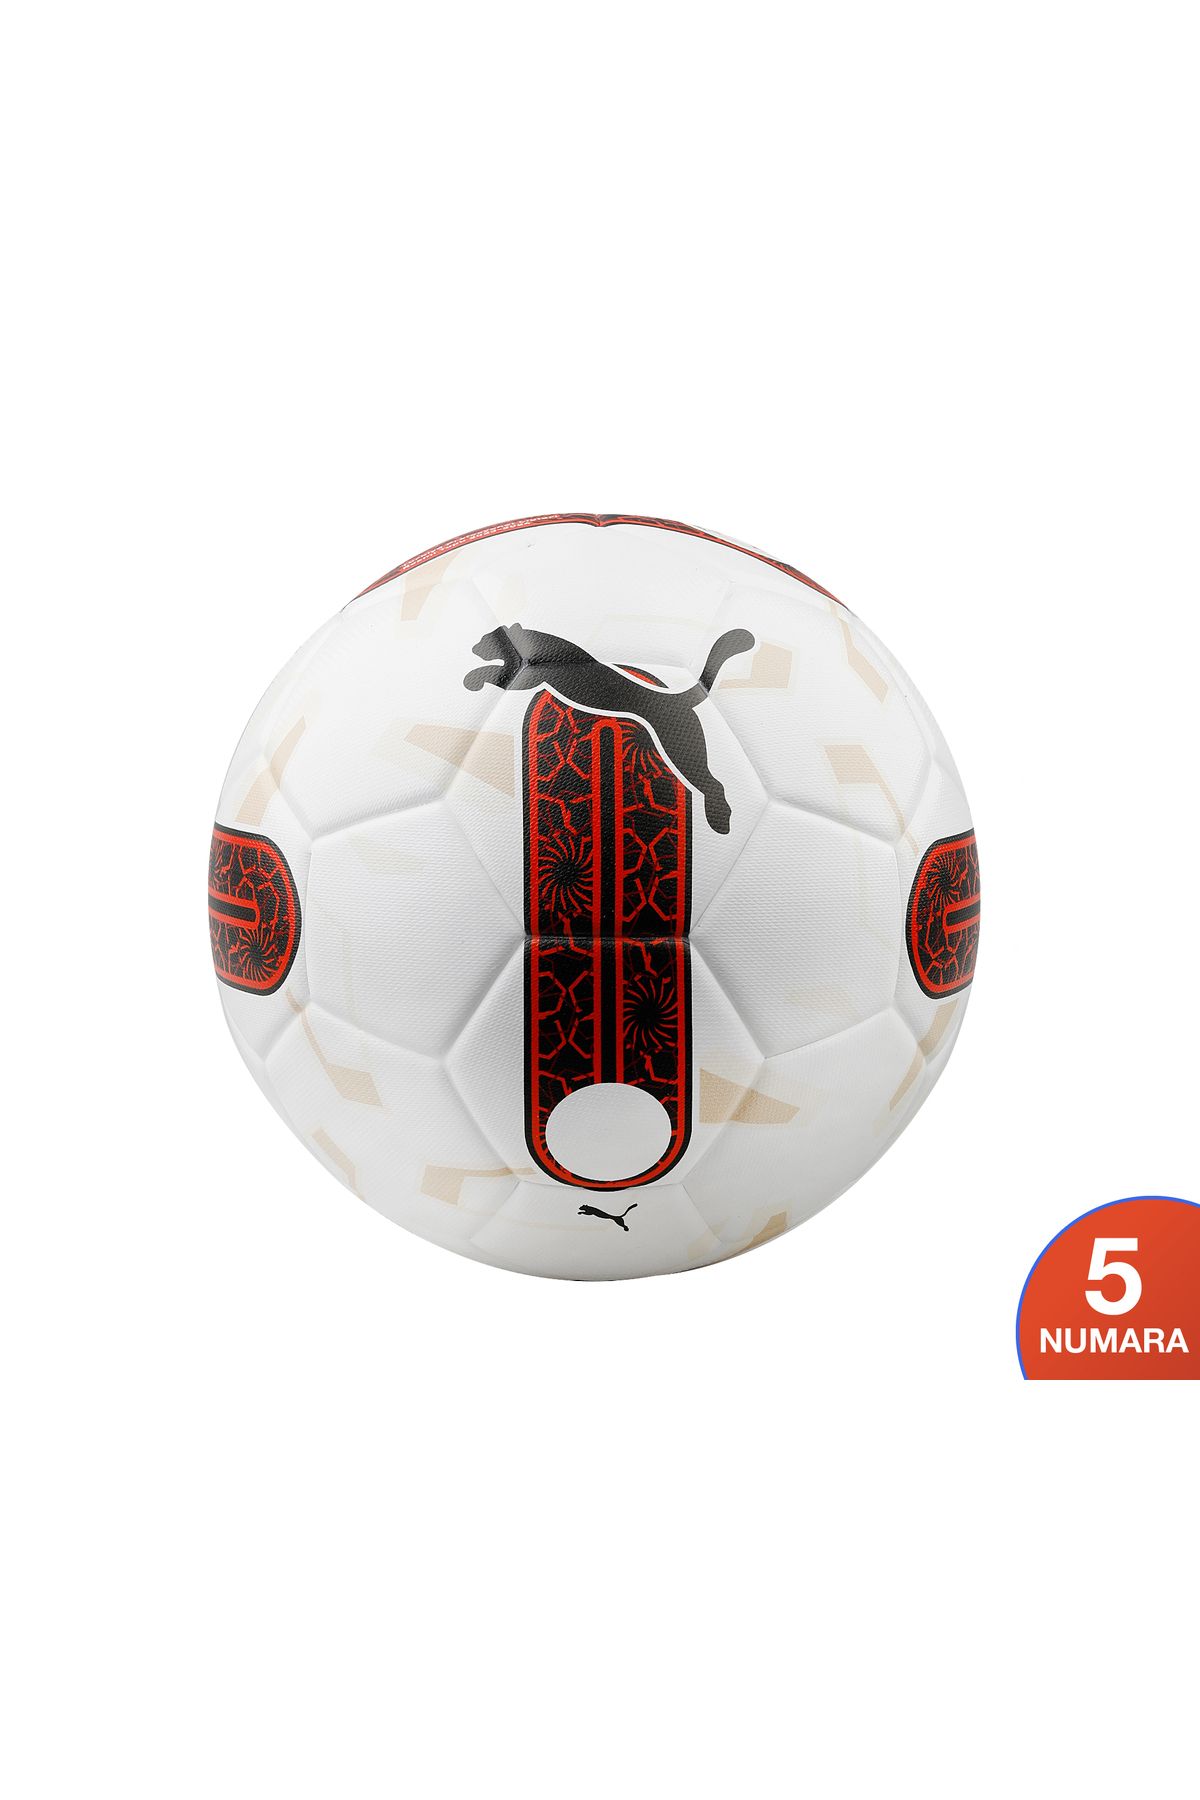 Puma Orbita 3 Resmi Süper Lig (Fifa Quality) Futbol Topu Renkli